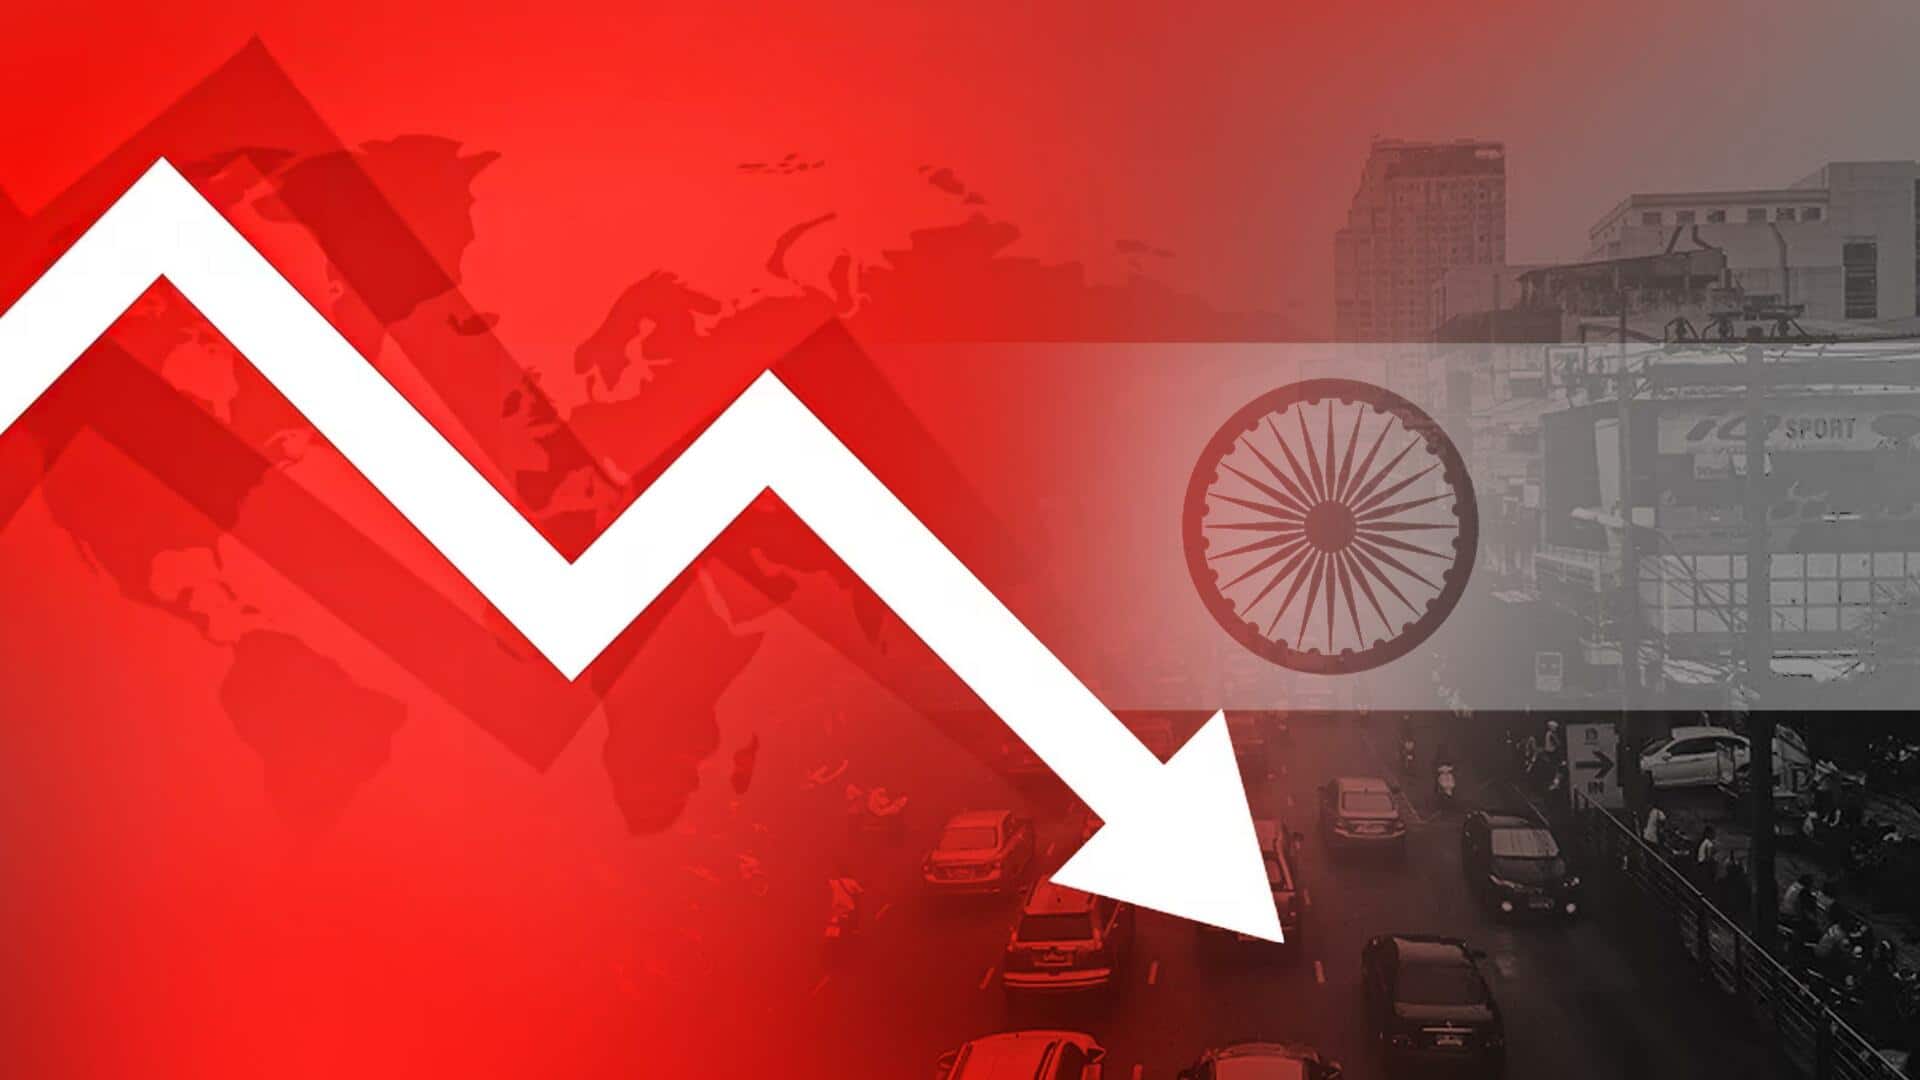 भारत की GDP विकास दर में गिरावट, तीसरी तिमाही में 4.4 प्रतिशत रही